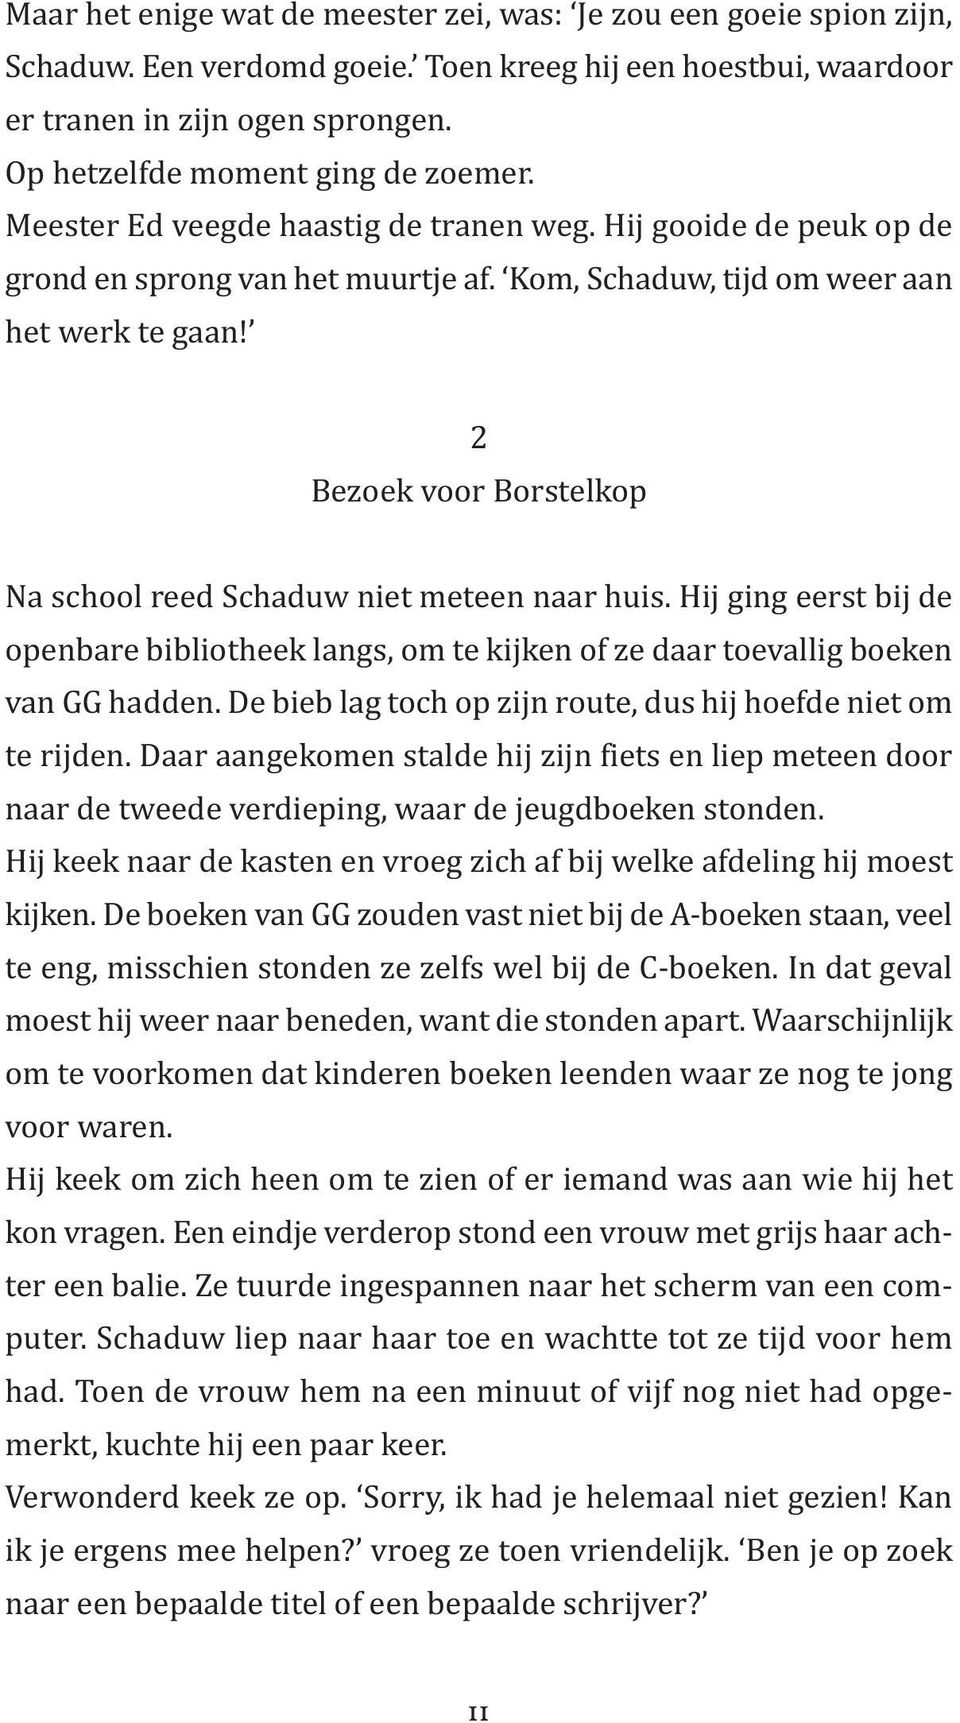 2 Bezoek voor Borstelkop Na school reed Schaduw niet meteen naar huis. Hij ging eerst bij de openbare bibliotheek langs, om te kijken of ze daar toevallig boeken van GG hadden.